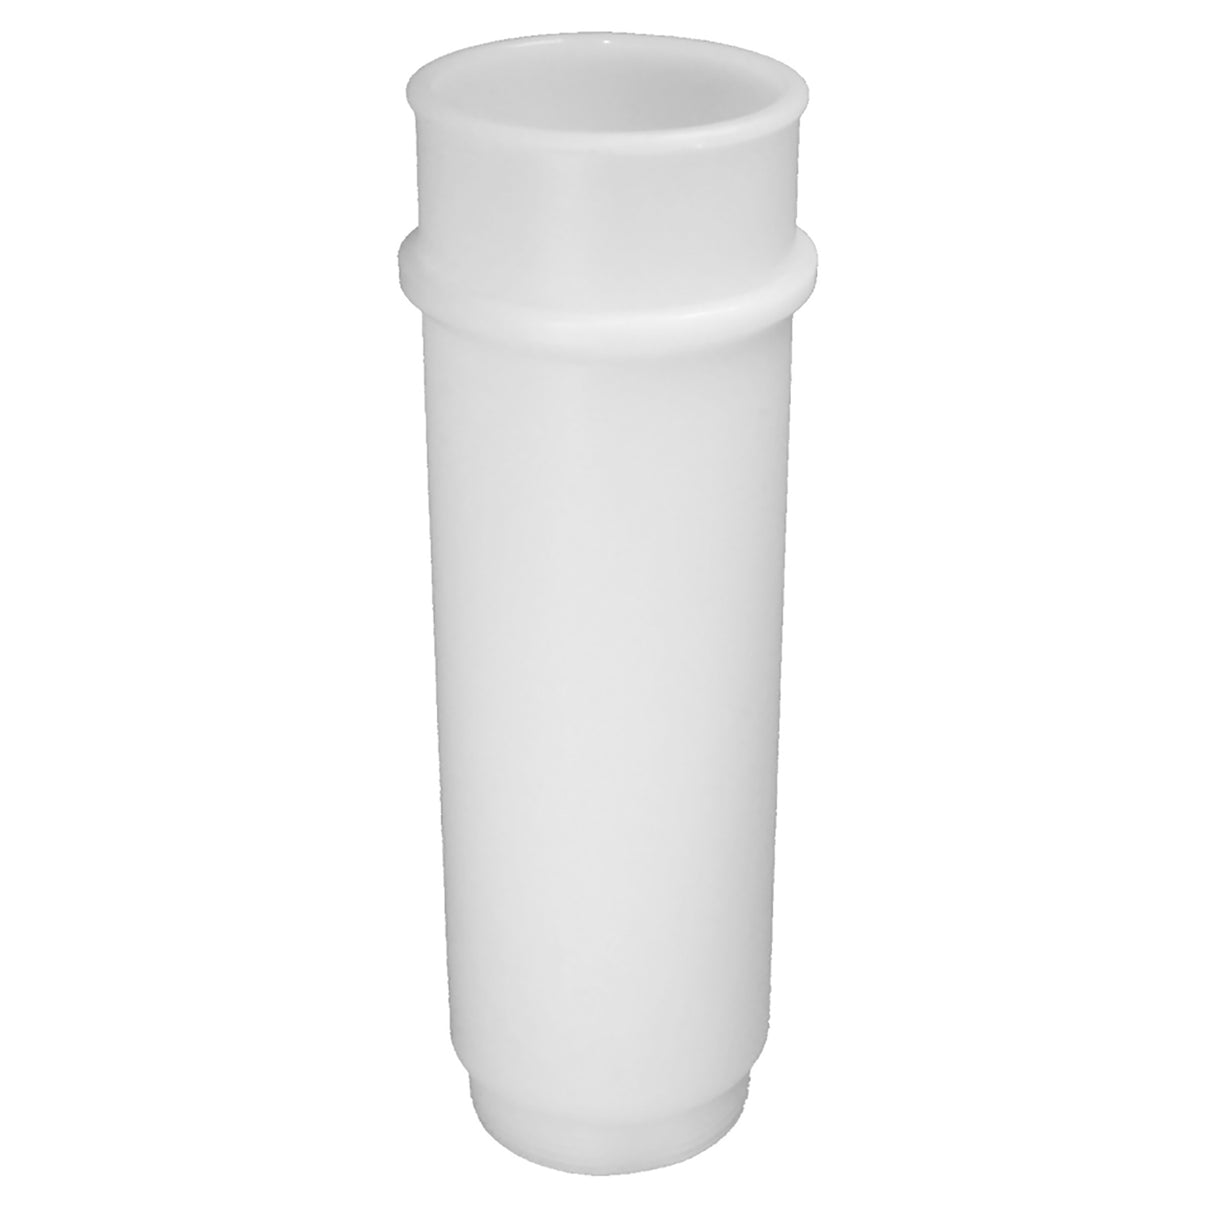 Чаша для соску кароткая 13 см, Lely Type A Corr. Lely 5.9701.0543.0